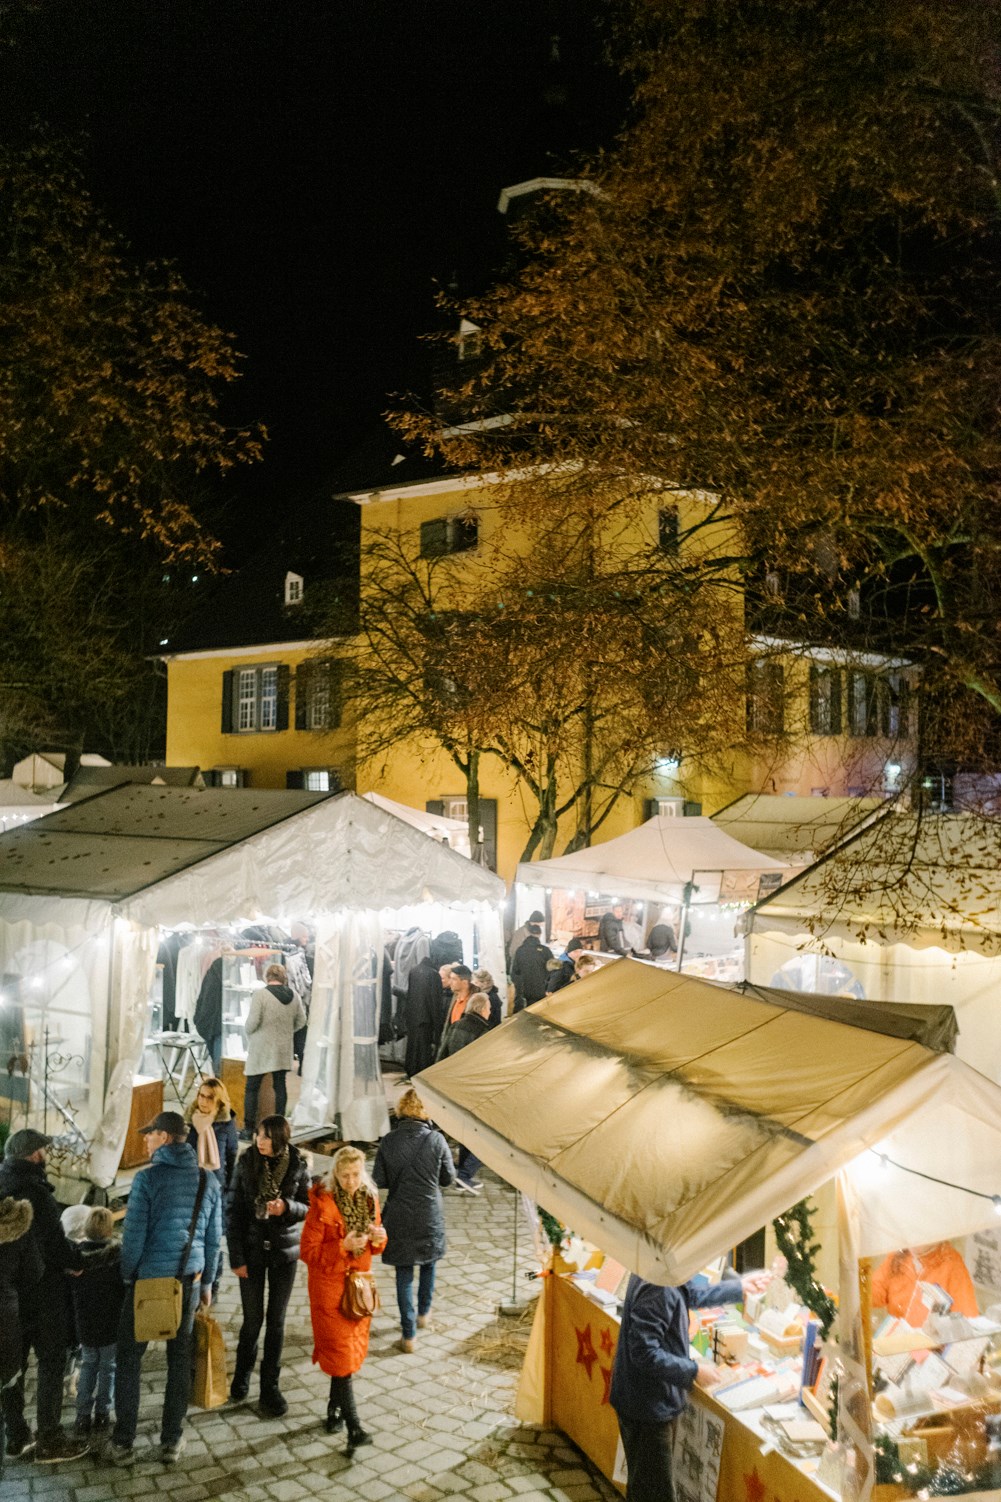 Schloss Lüntenbeck Highlights beim Ausflugsziel Der stimmungsvolle Weihnachtsmarkt in Schlosshof und -Garten.